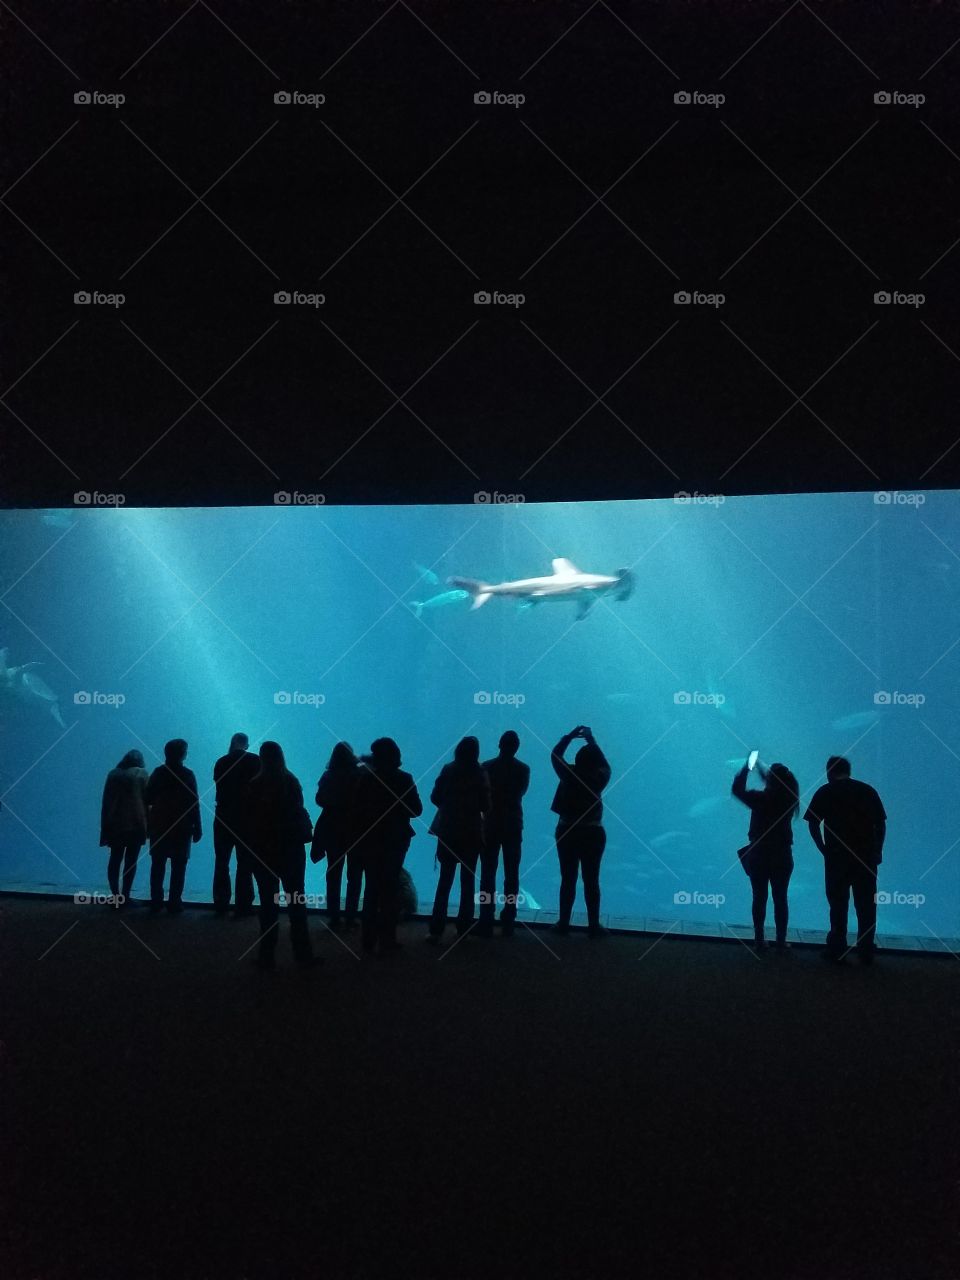 Deep ocean under glass